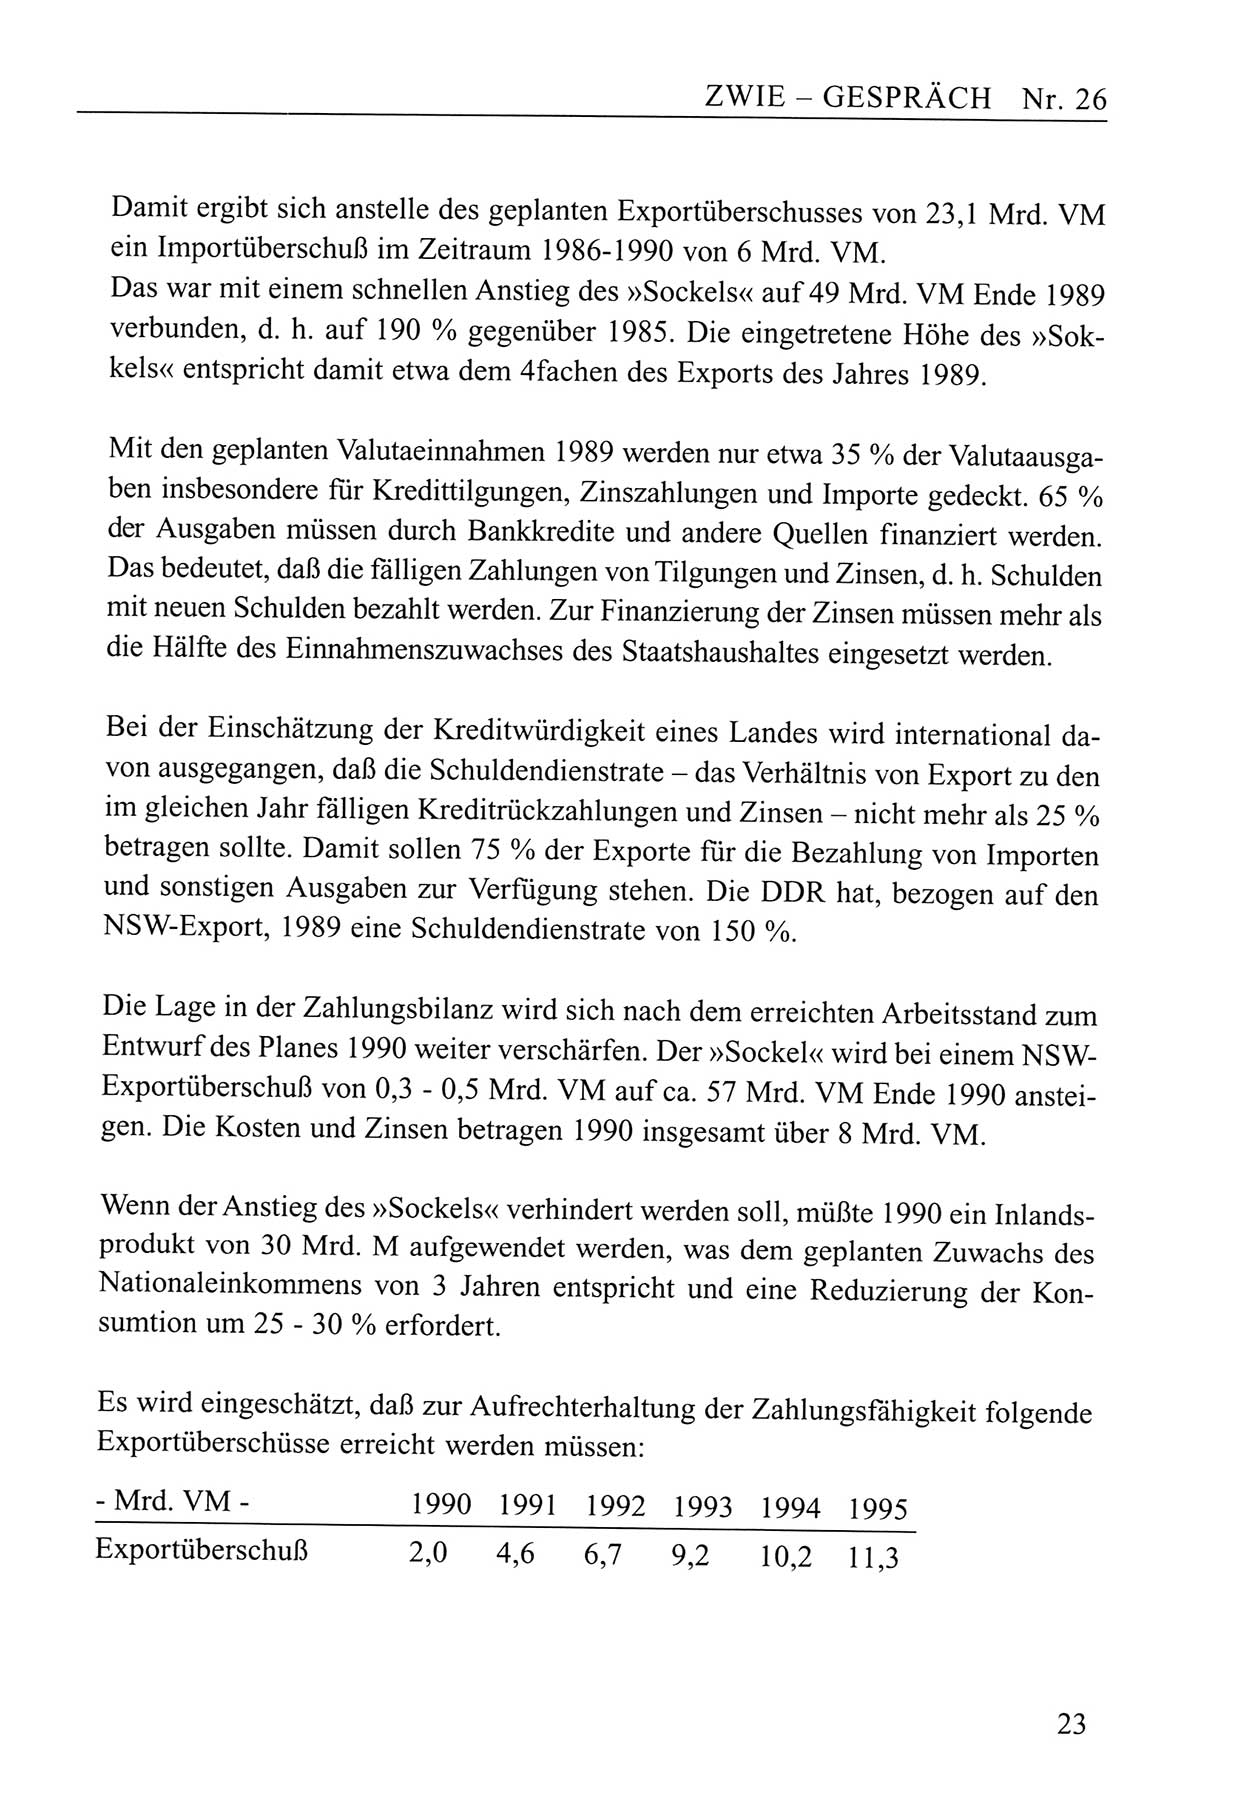 Zwie-Gespräch, Beiträge zum Umgang mit der Staatssicherheits-Vergangenheit [Deutsche Demokratische Republik (DDR)], Ausgabe Nr. 26, Berlin 1995, Seite 23 (Zwie-Gespr. Ausg. 26 1995, S. 23)